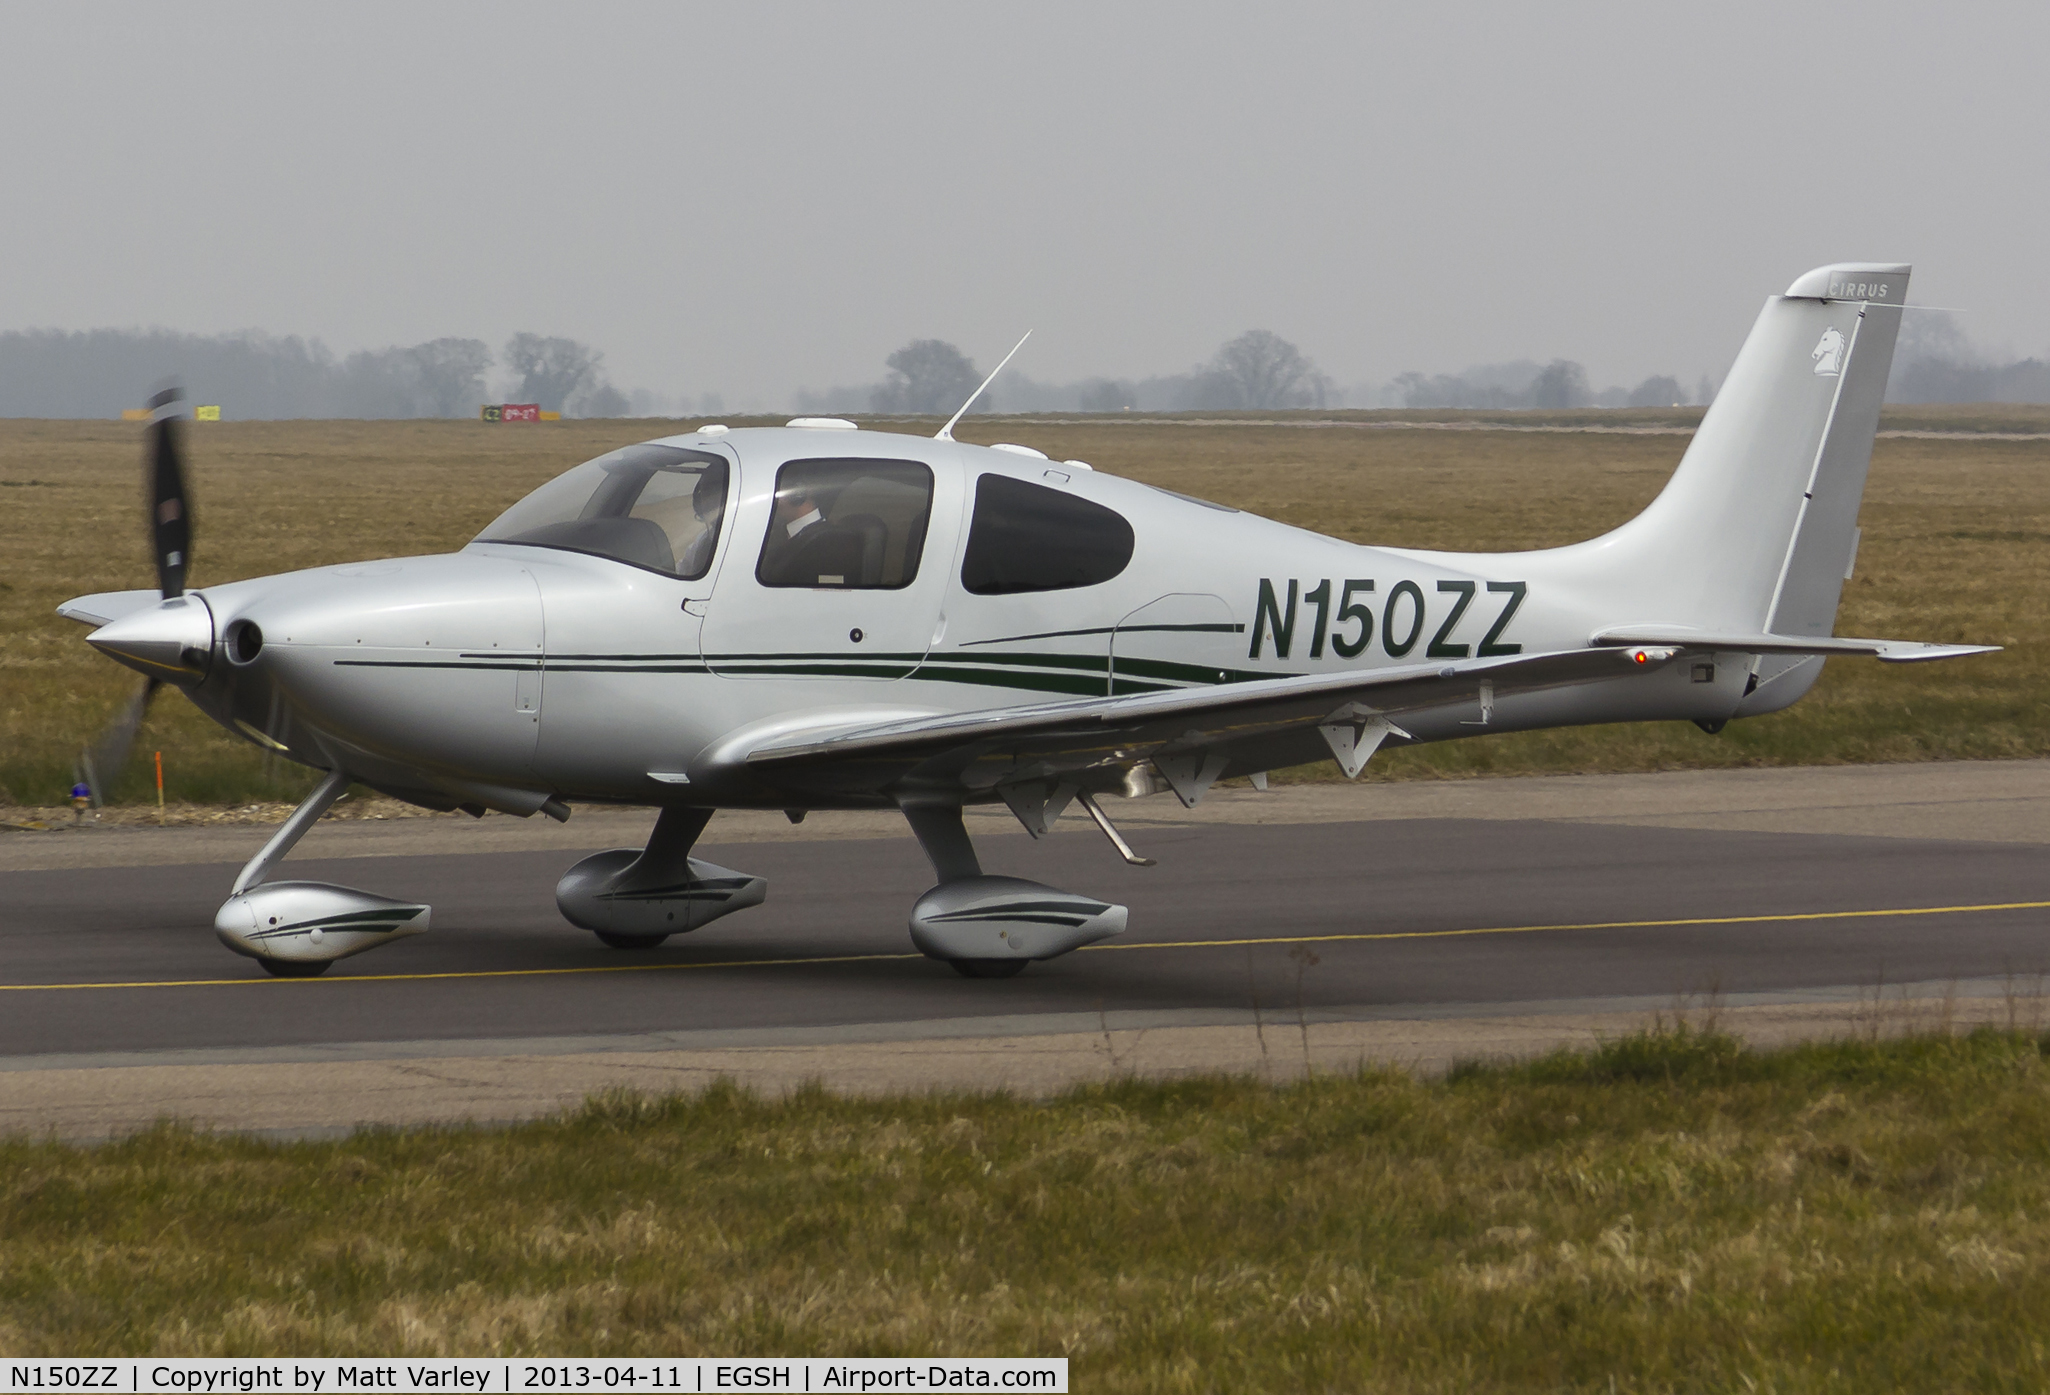 N150ZZ, 2007 Cirrus SR22 C/N 2609, Arriving at SaxonAir.